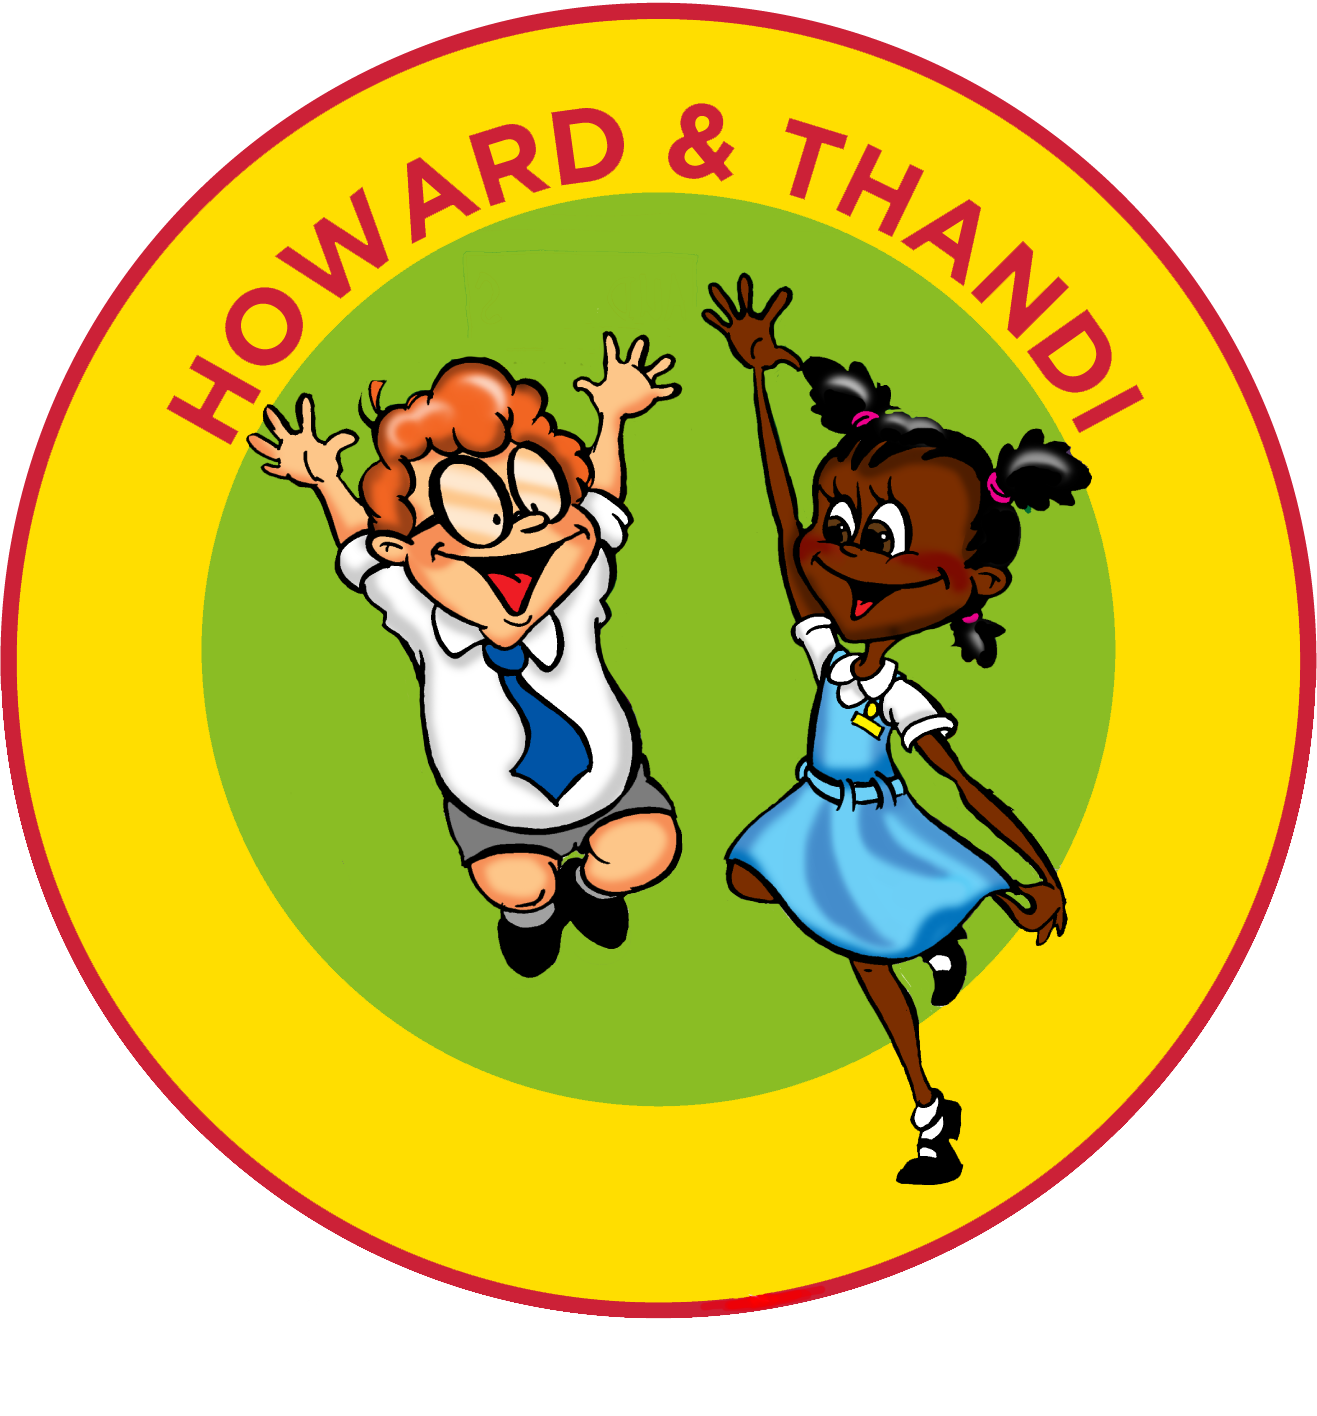 Howard & Thandi Jumping